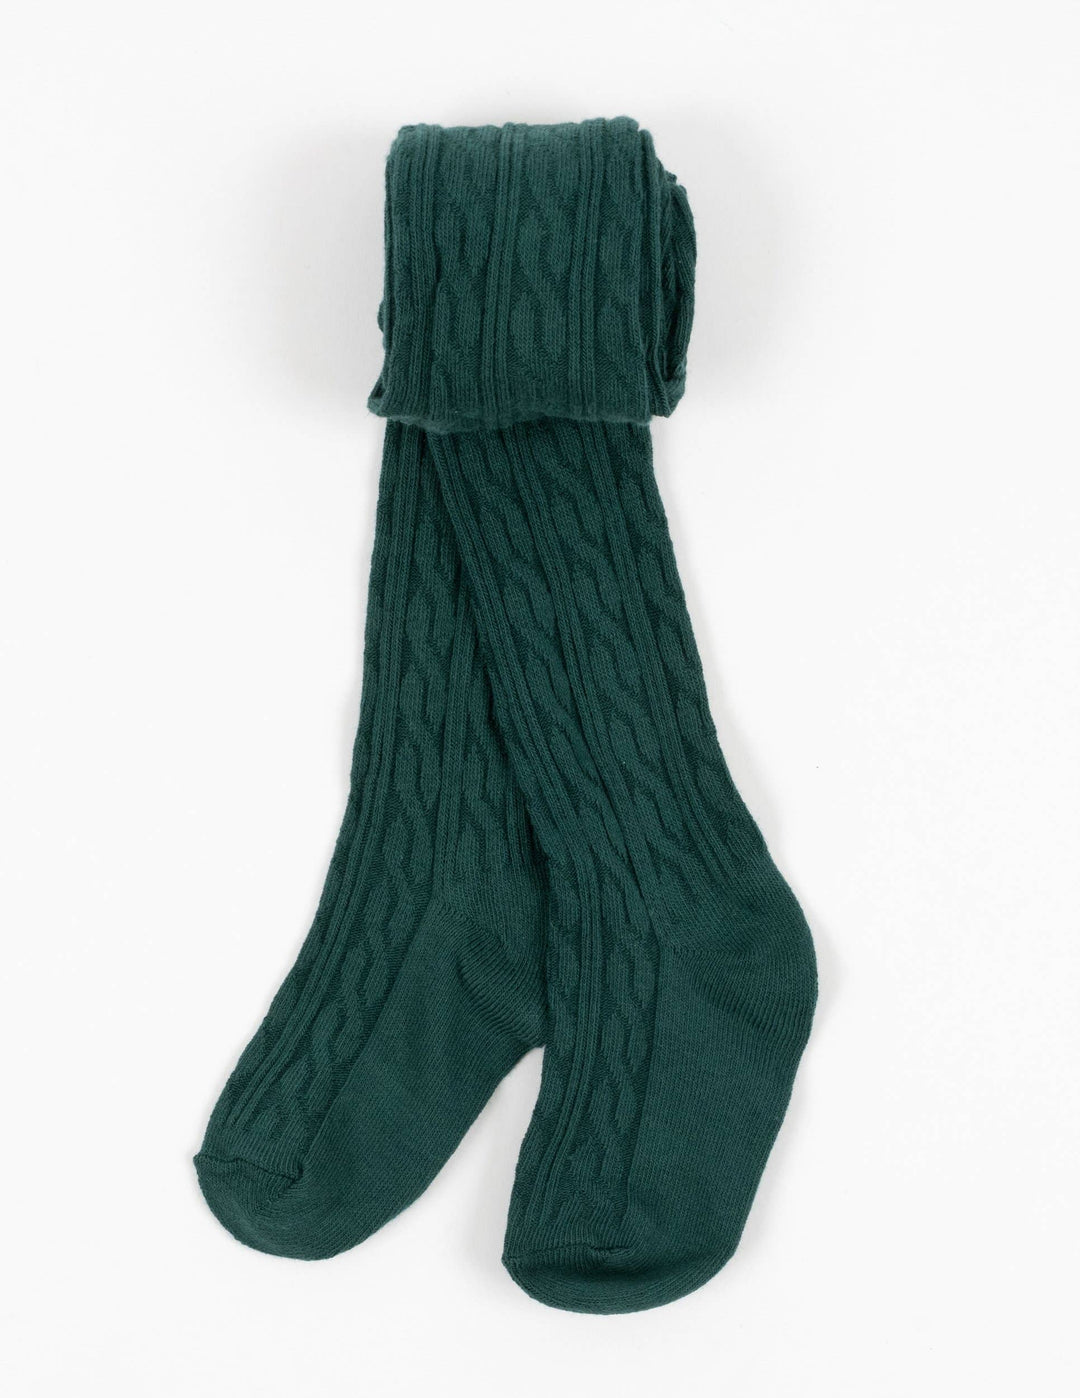 Kids Knit Tights - Green